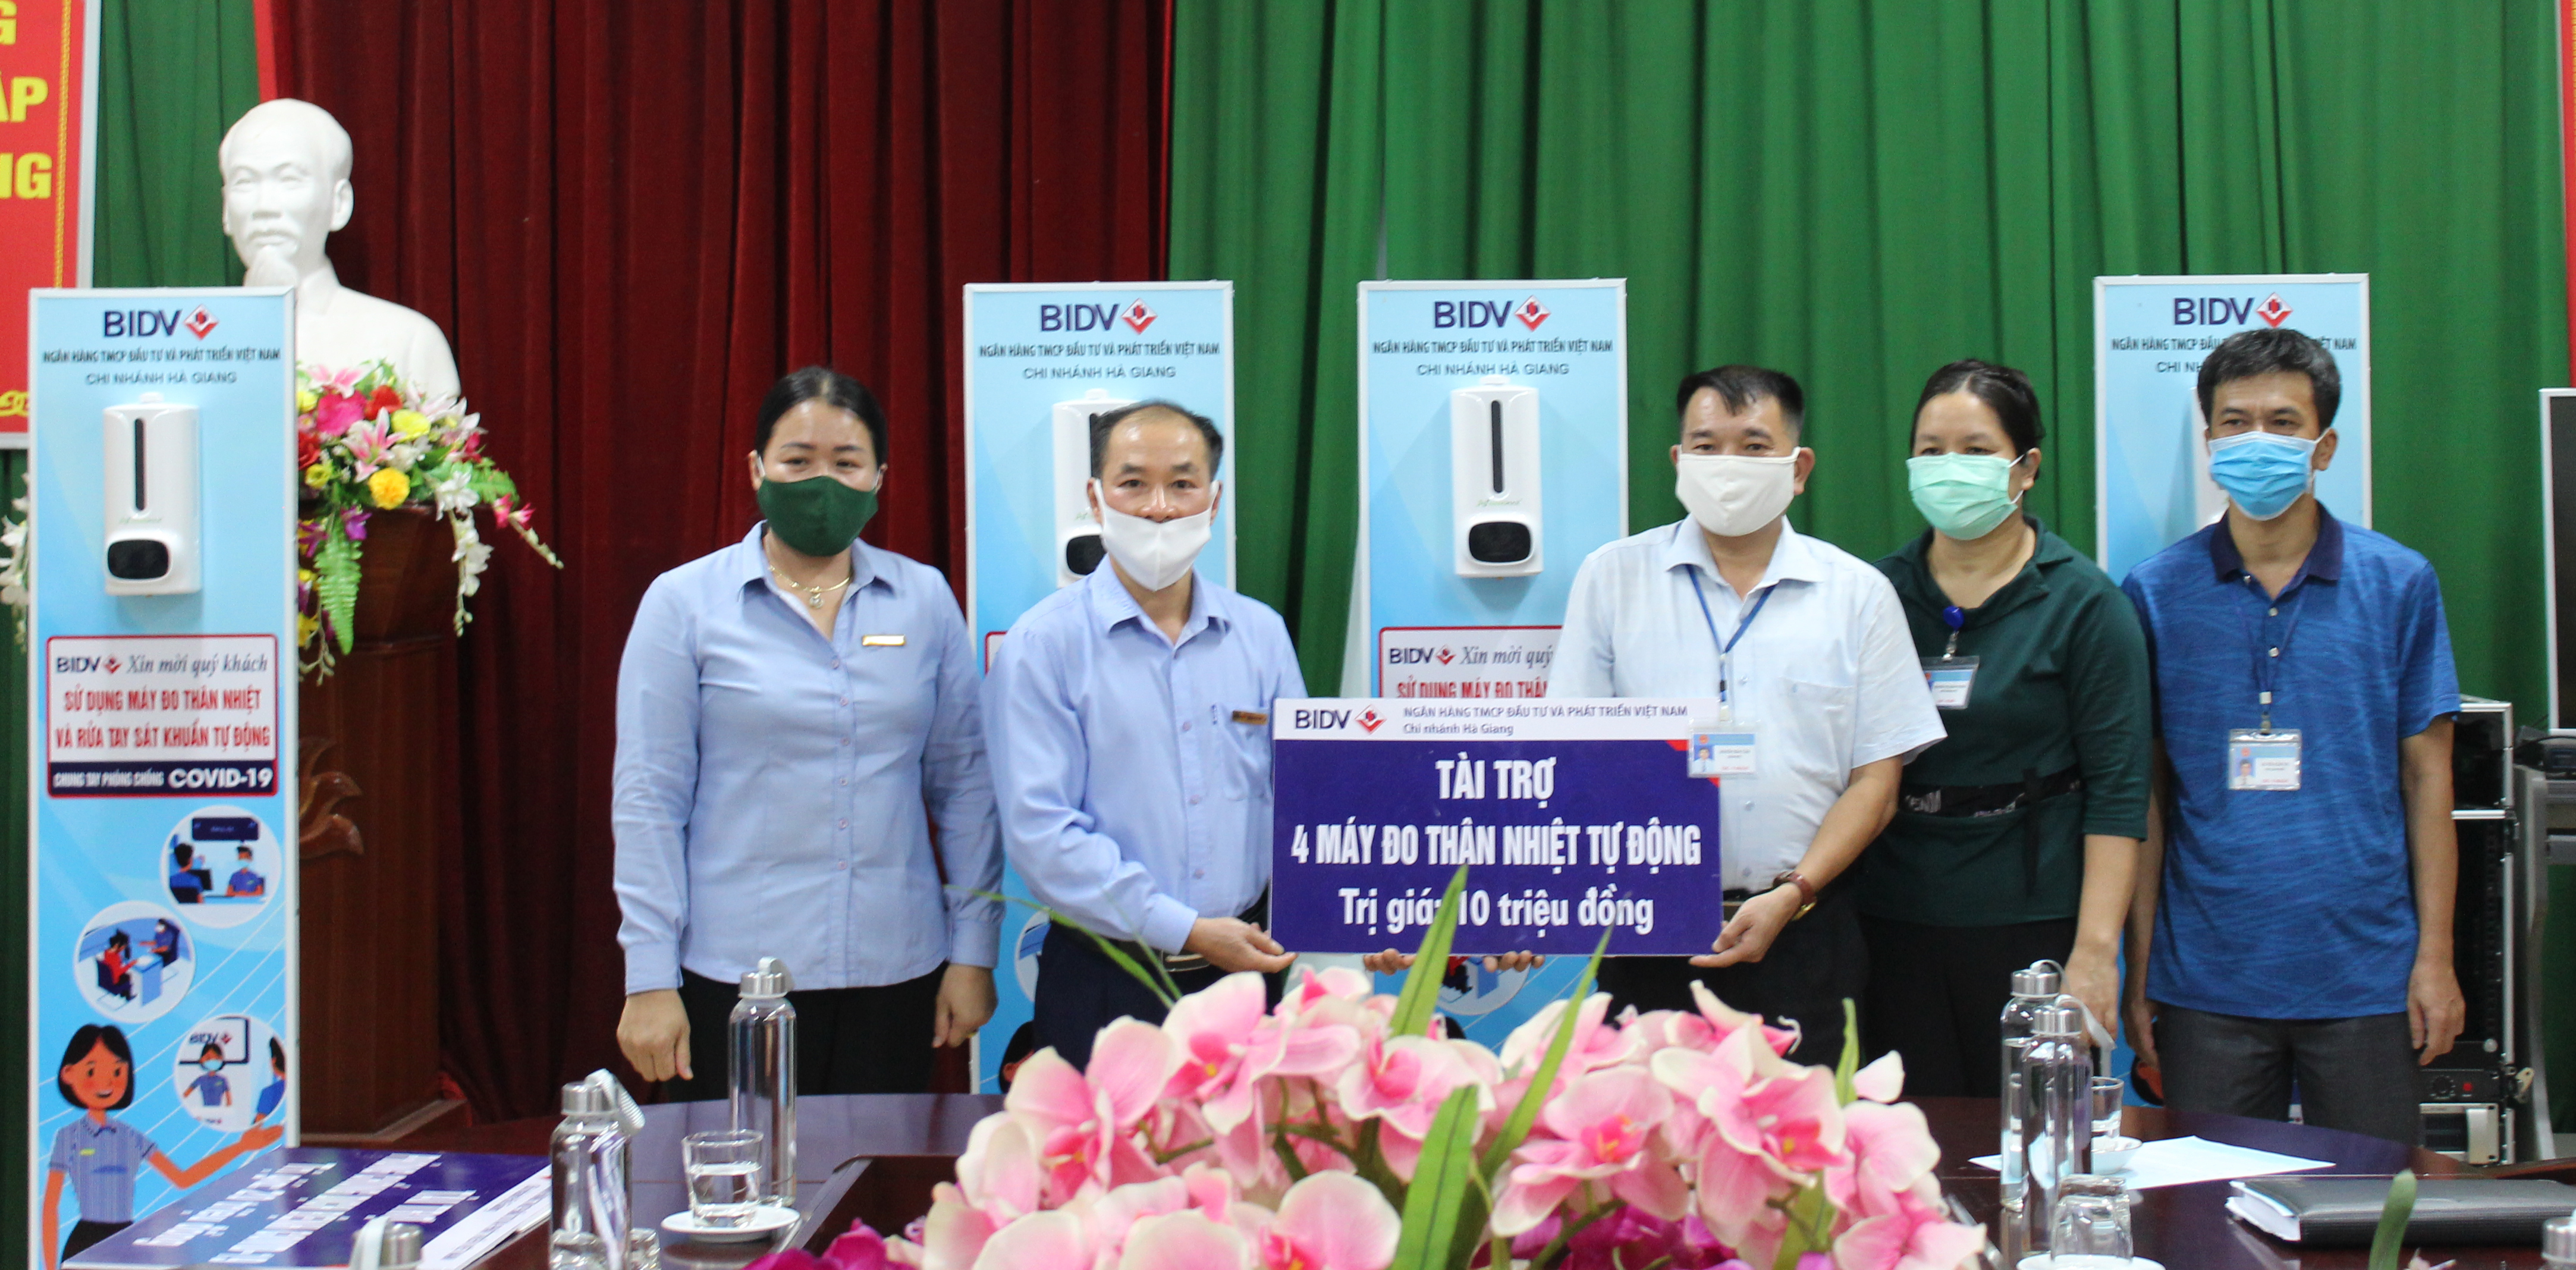 Lãnh đạo Ngân hàng BIDV - Chi nhánh Hà Giang trao tặng máy đo thân nhiệt và sát khuẩn tự động cho Trung tâm Kiểm soát bệnh tật 